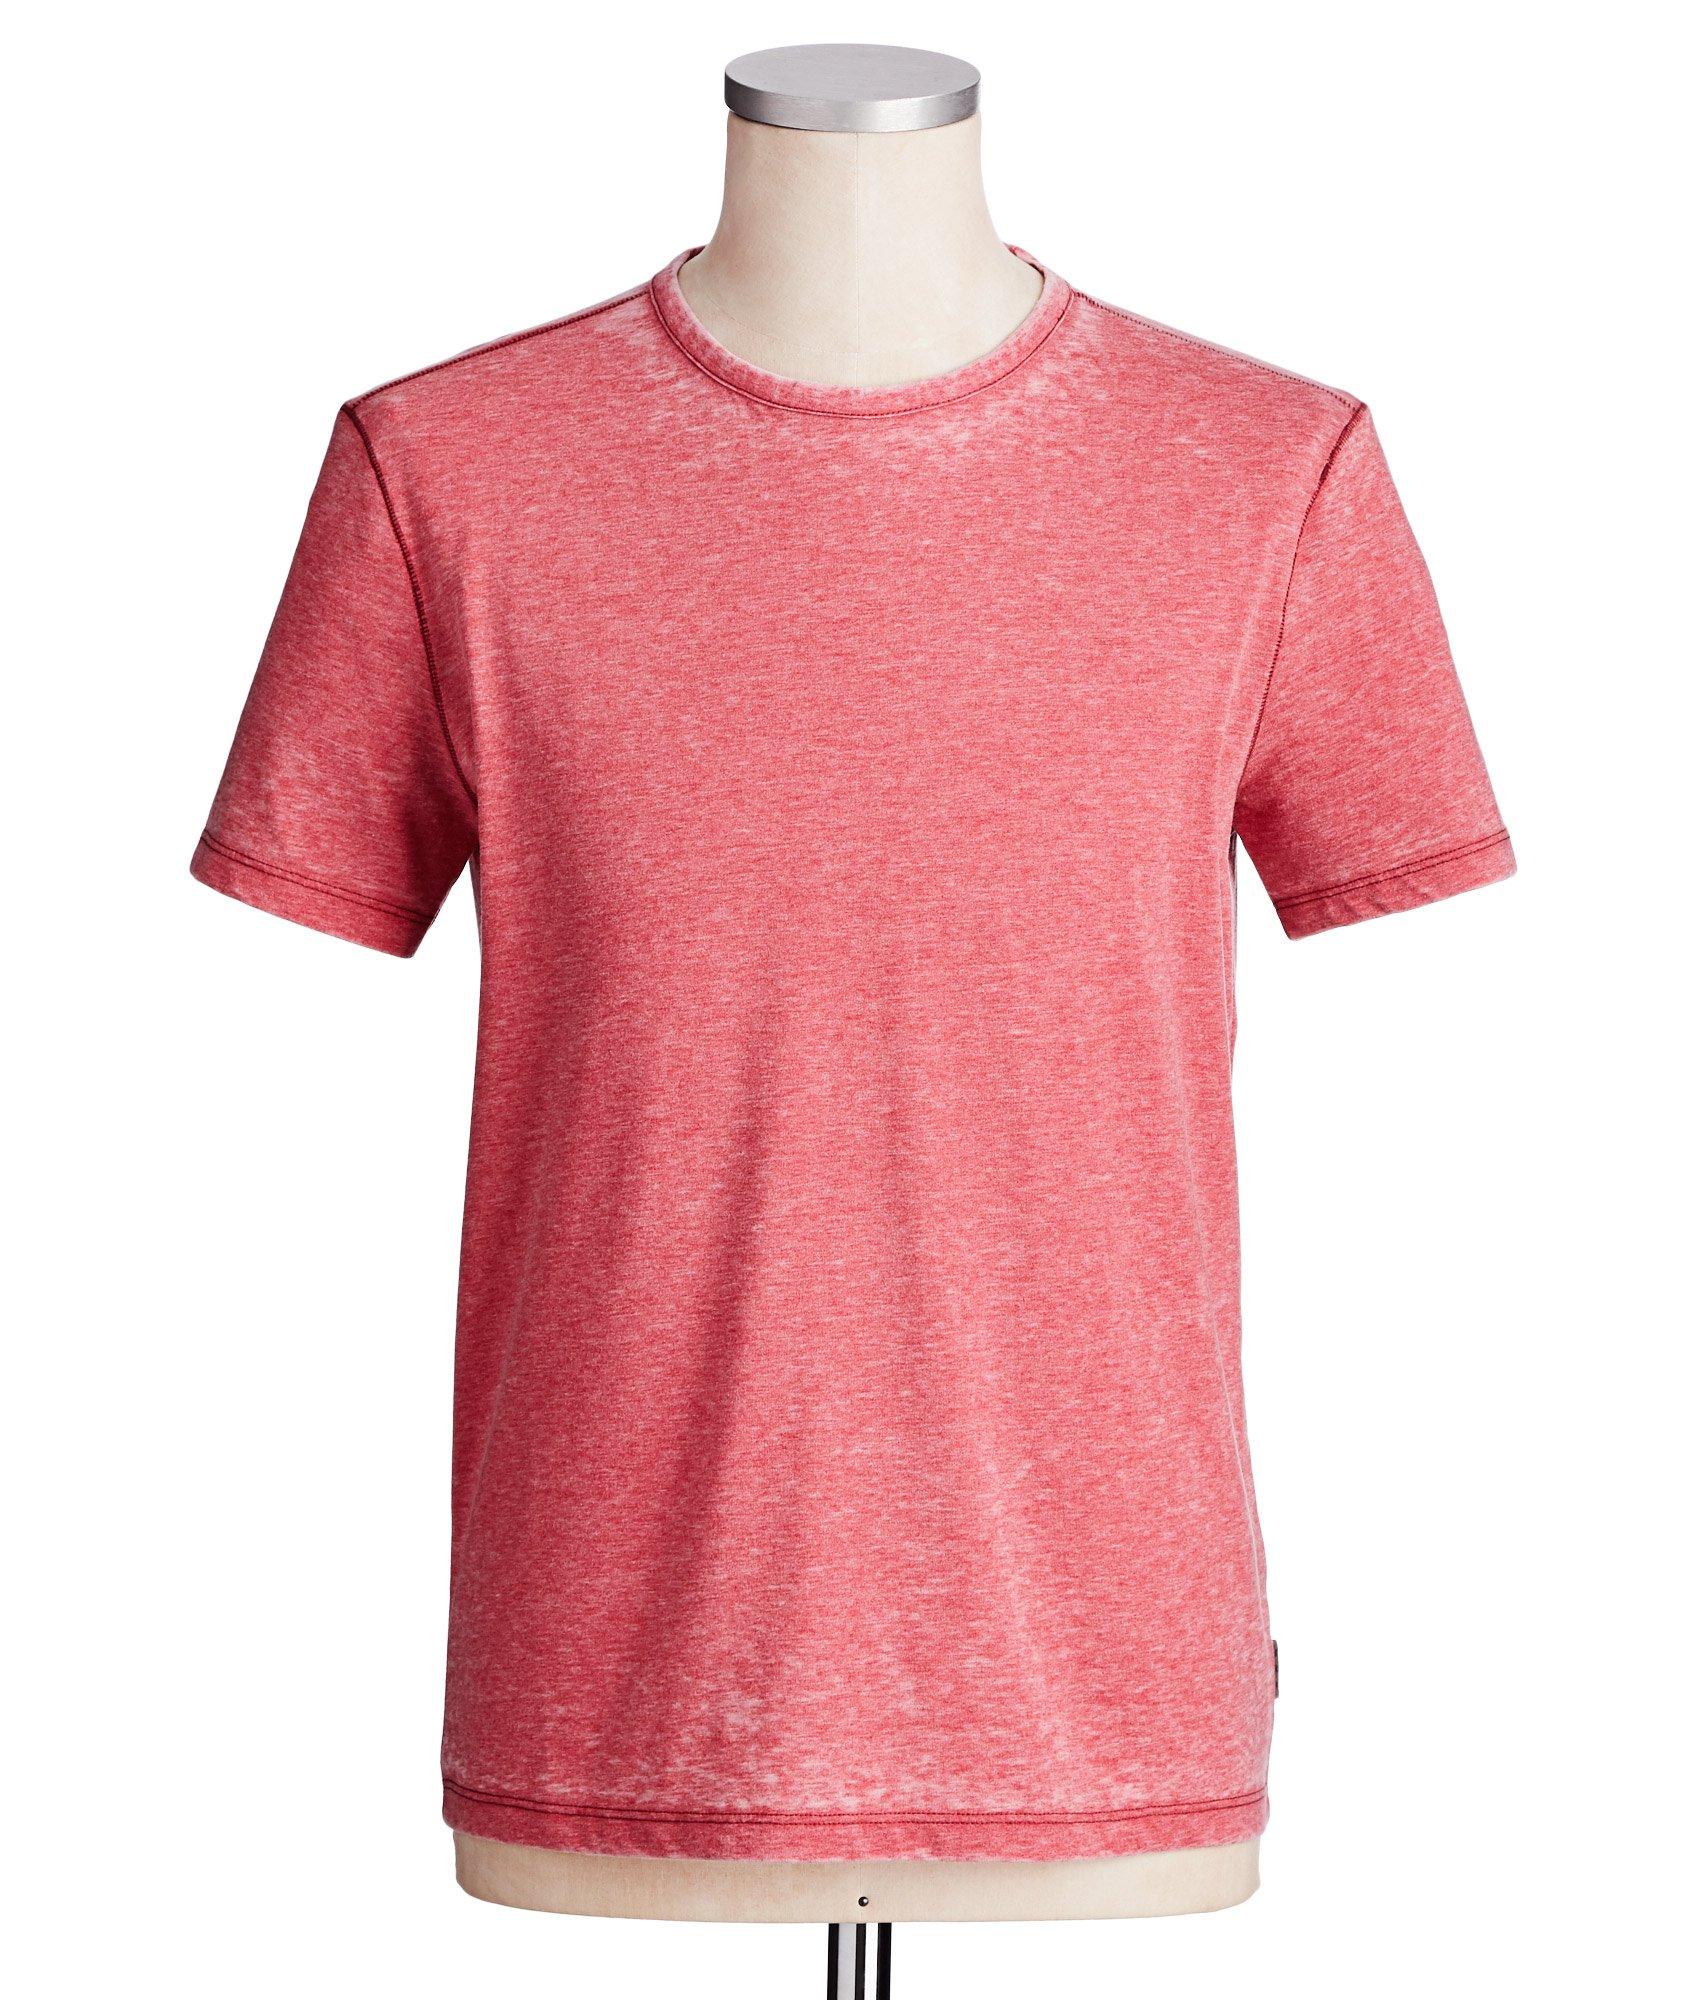 Cotton Blend T-Shirt image 0